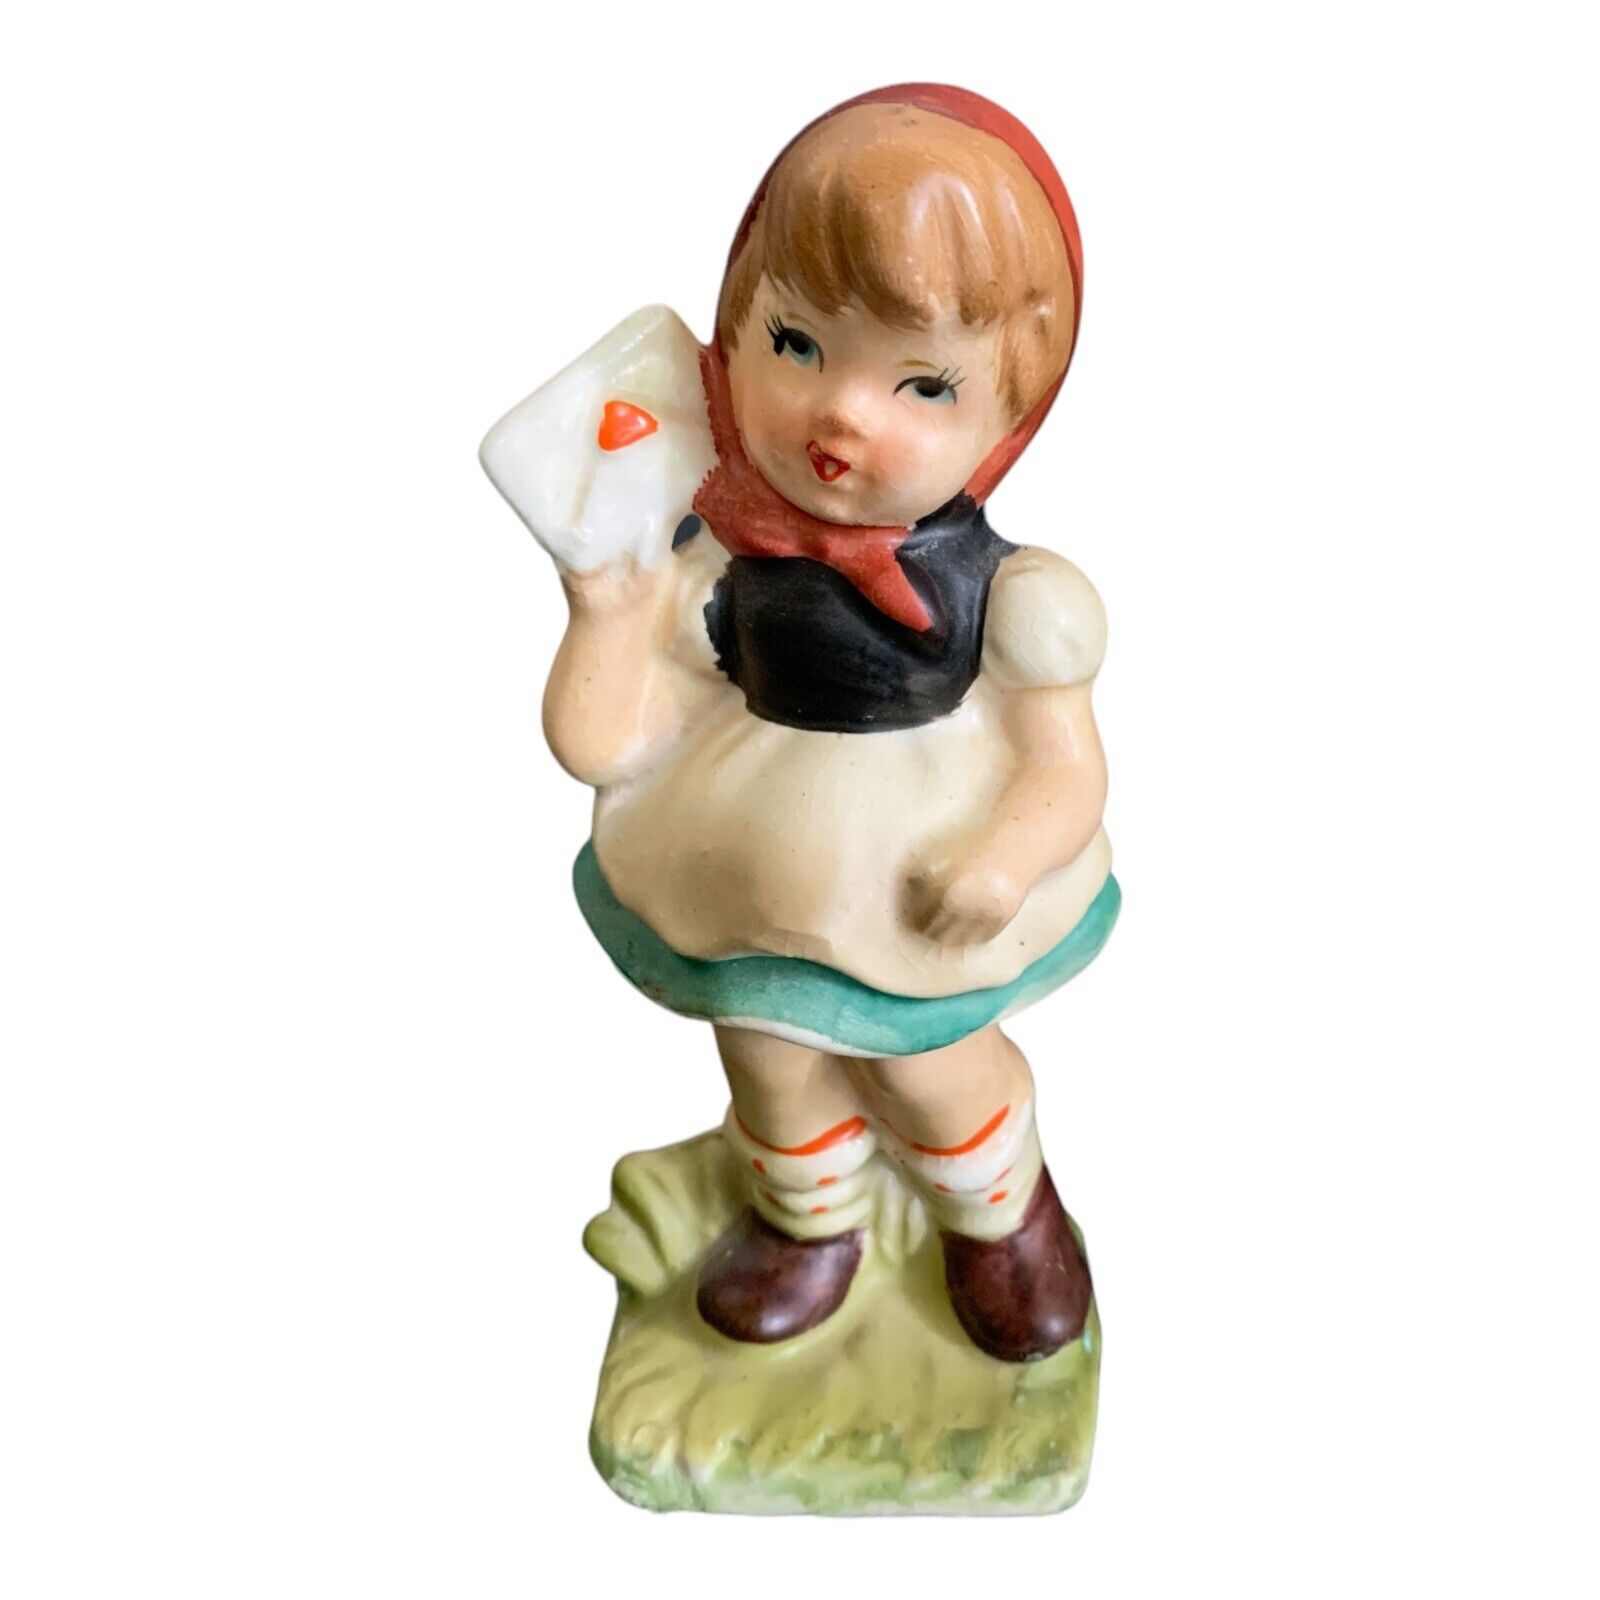 Hummel-like Girl With Letter Figurine 5” Vintage Japan